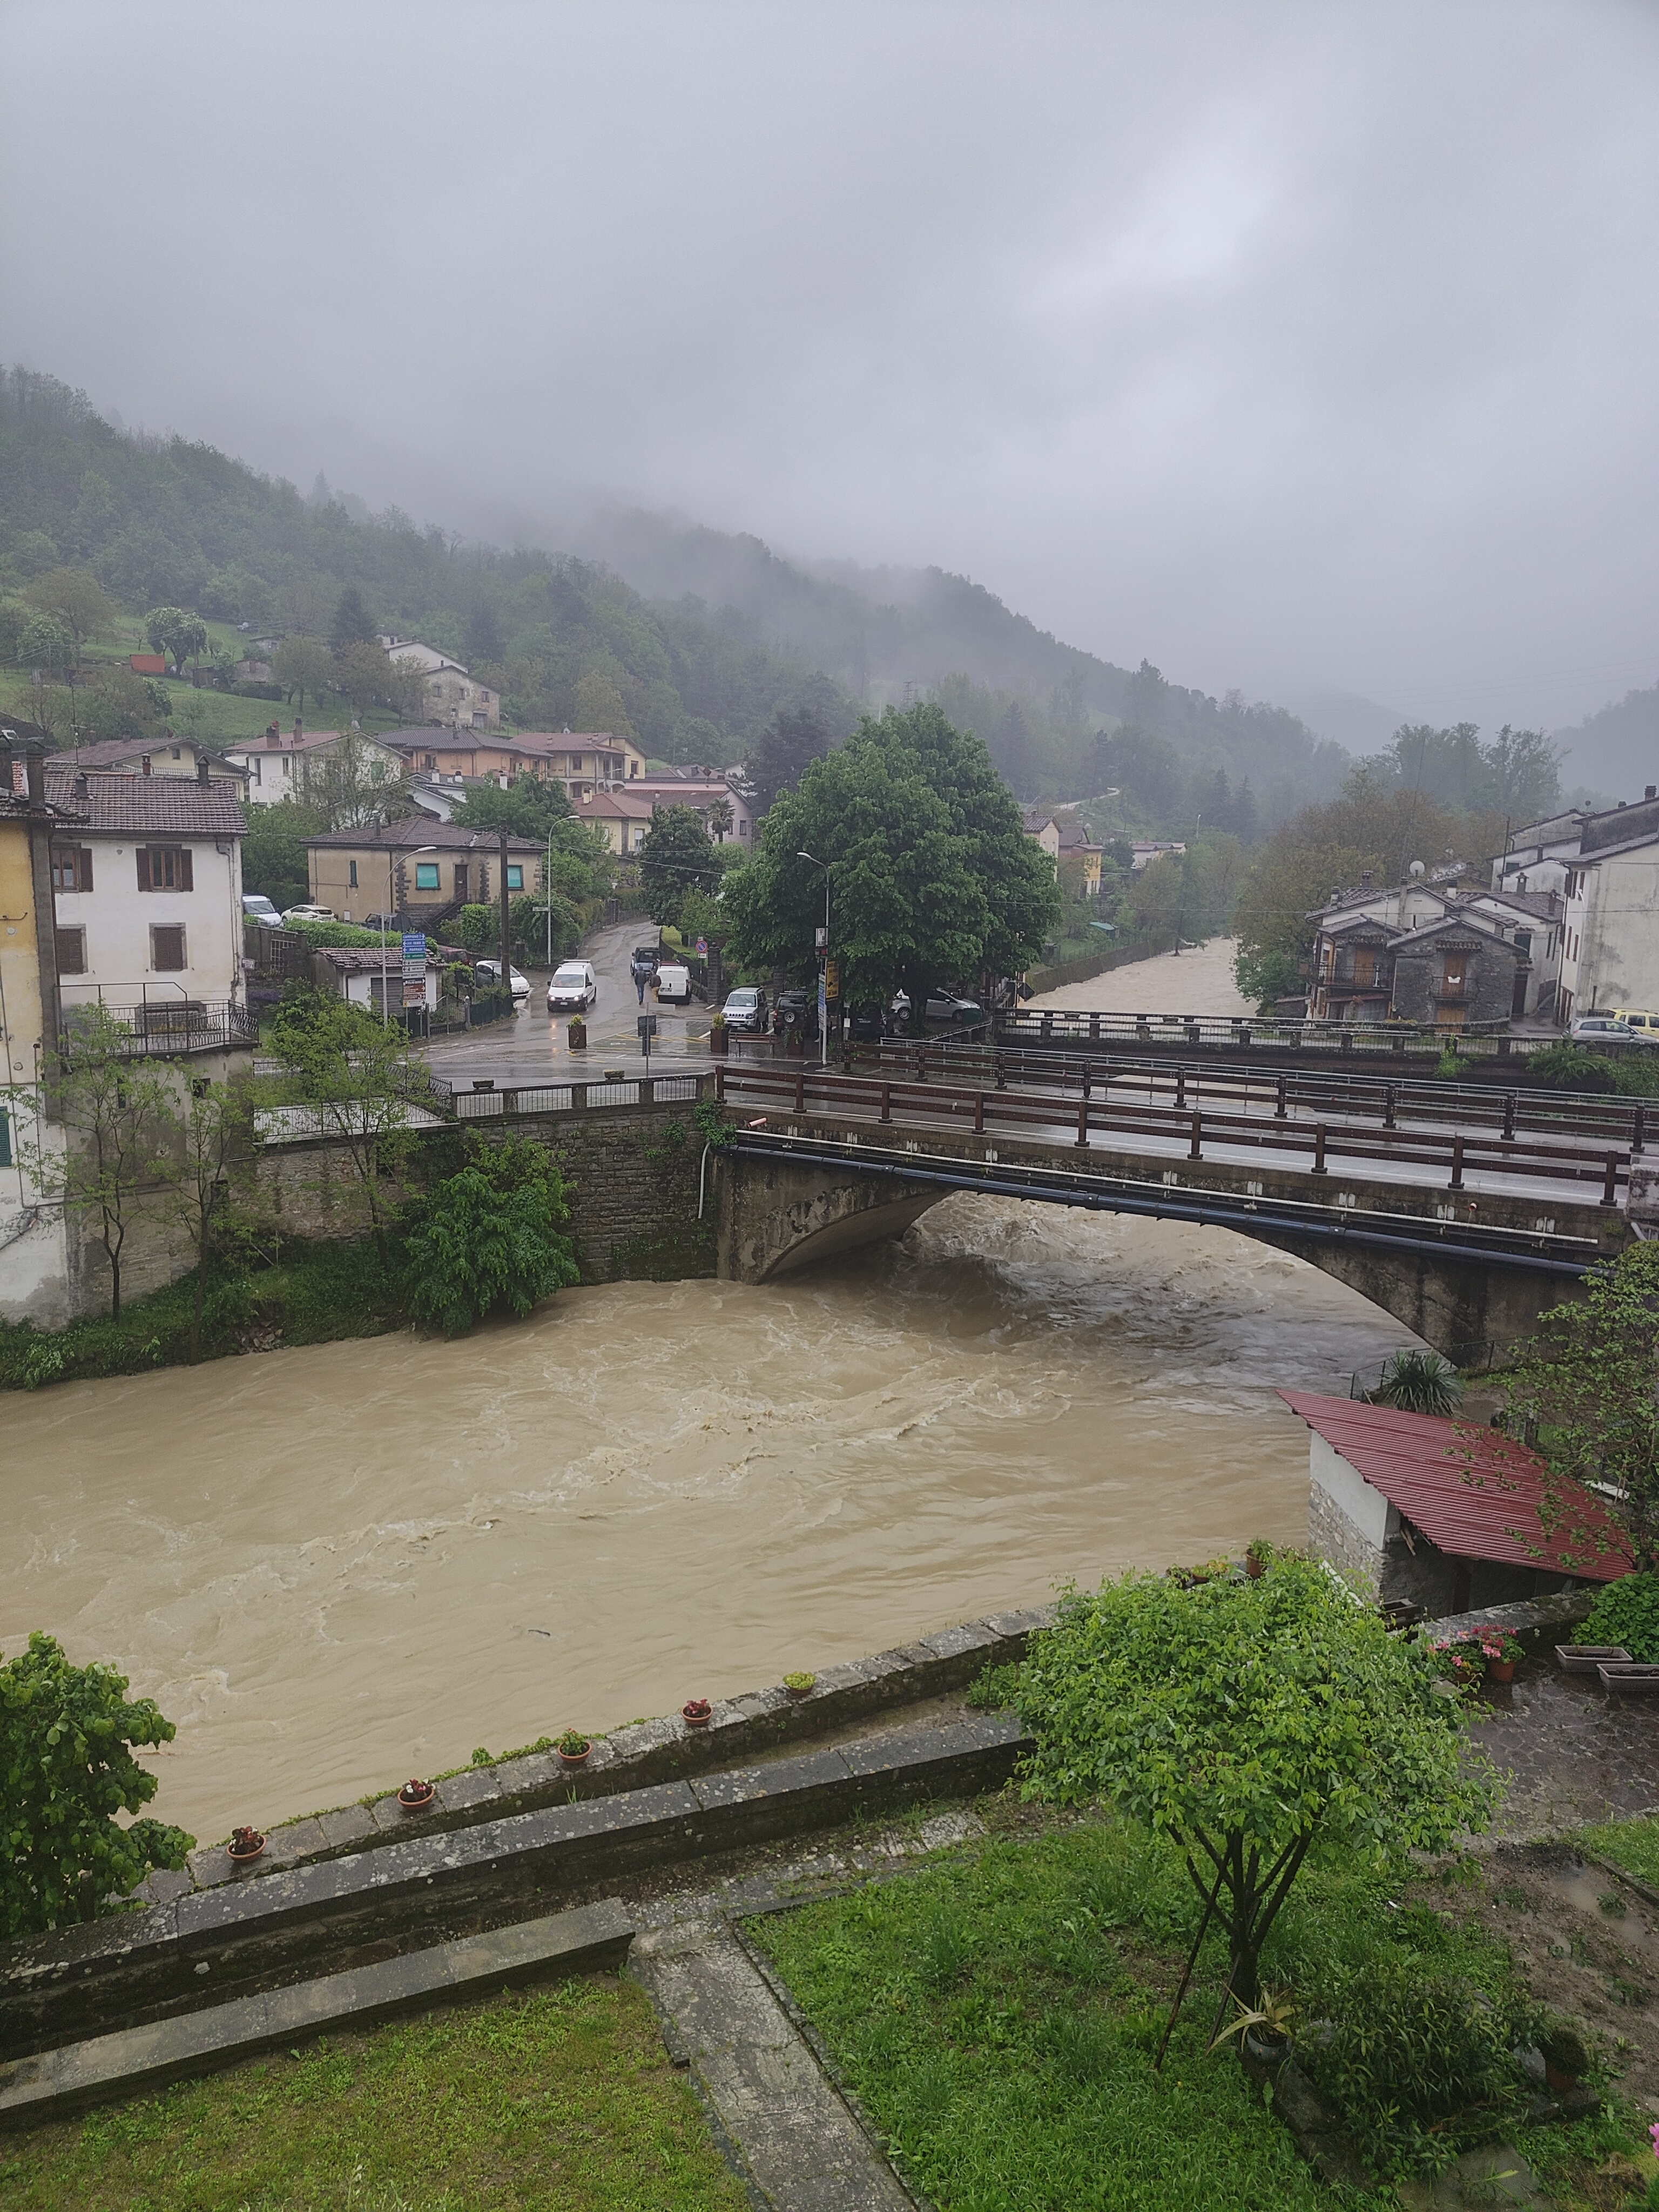 Dom z Kamienia blog, powódź Emilia Romania 2023